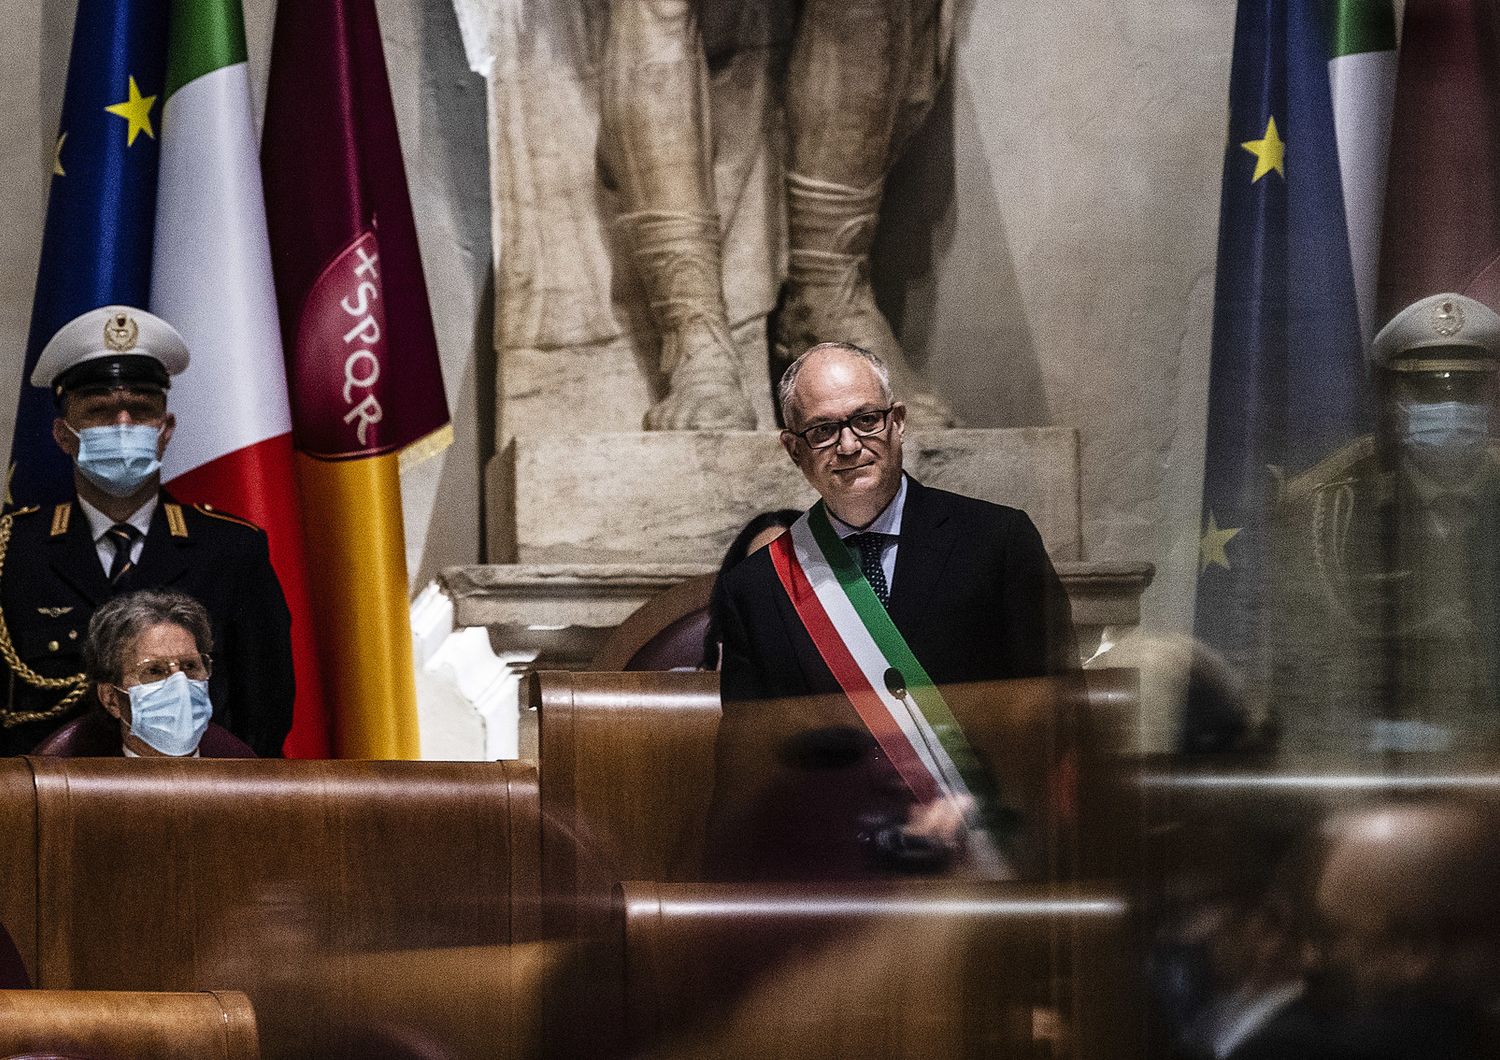 Gualtieri apre a opposizioni su grandi temi Roma